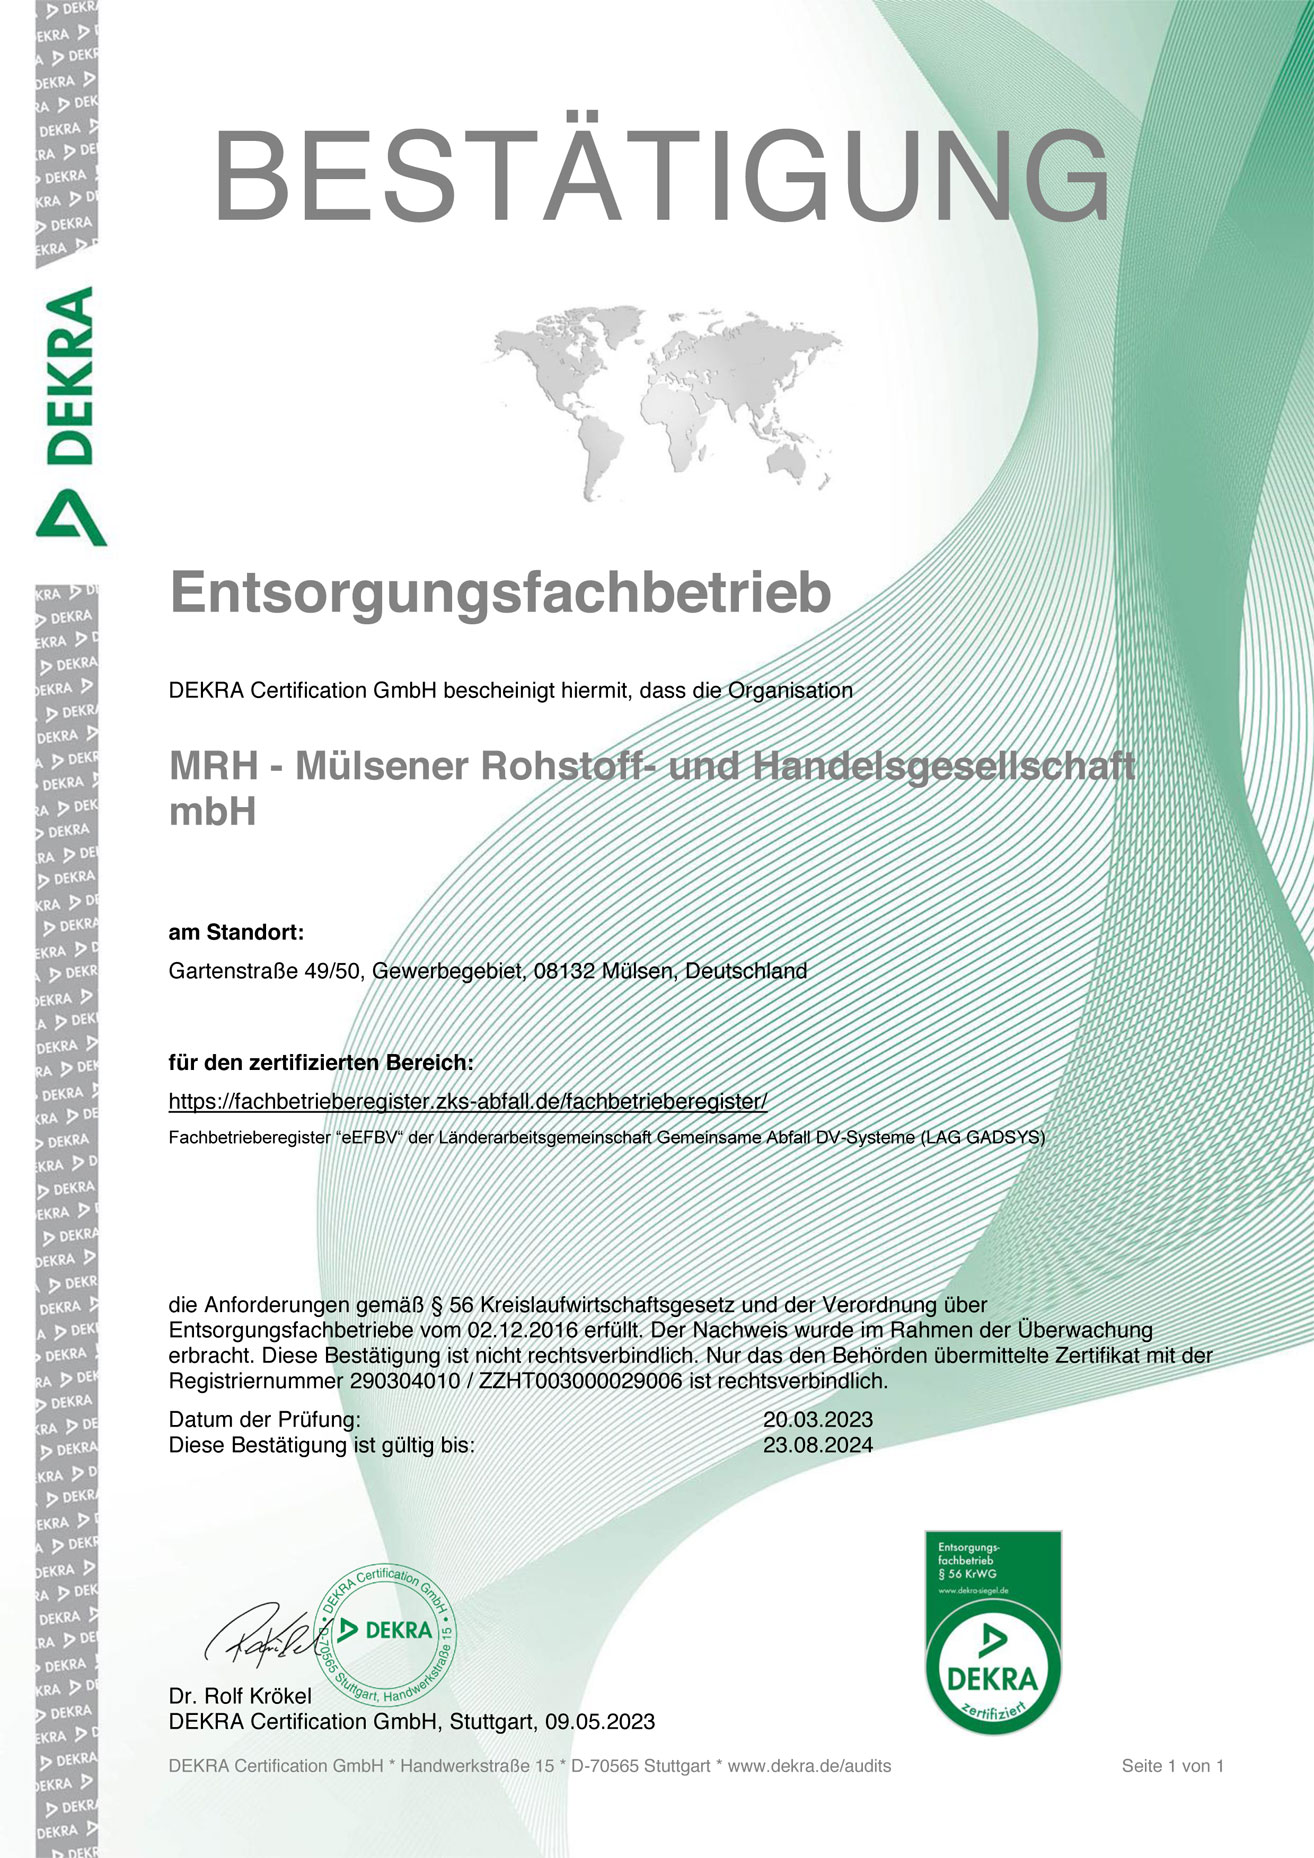 EfB-Zertifikat/Entsorgungsfachbetrieb für die MRH Mülsener Rohstoff- und Handelsgesellschaft mbH